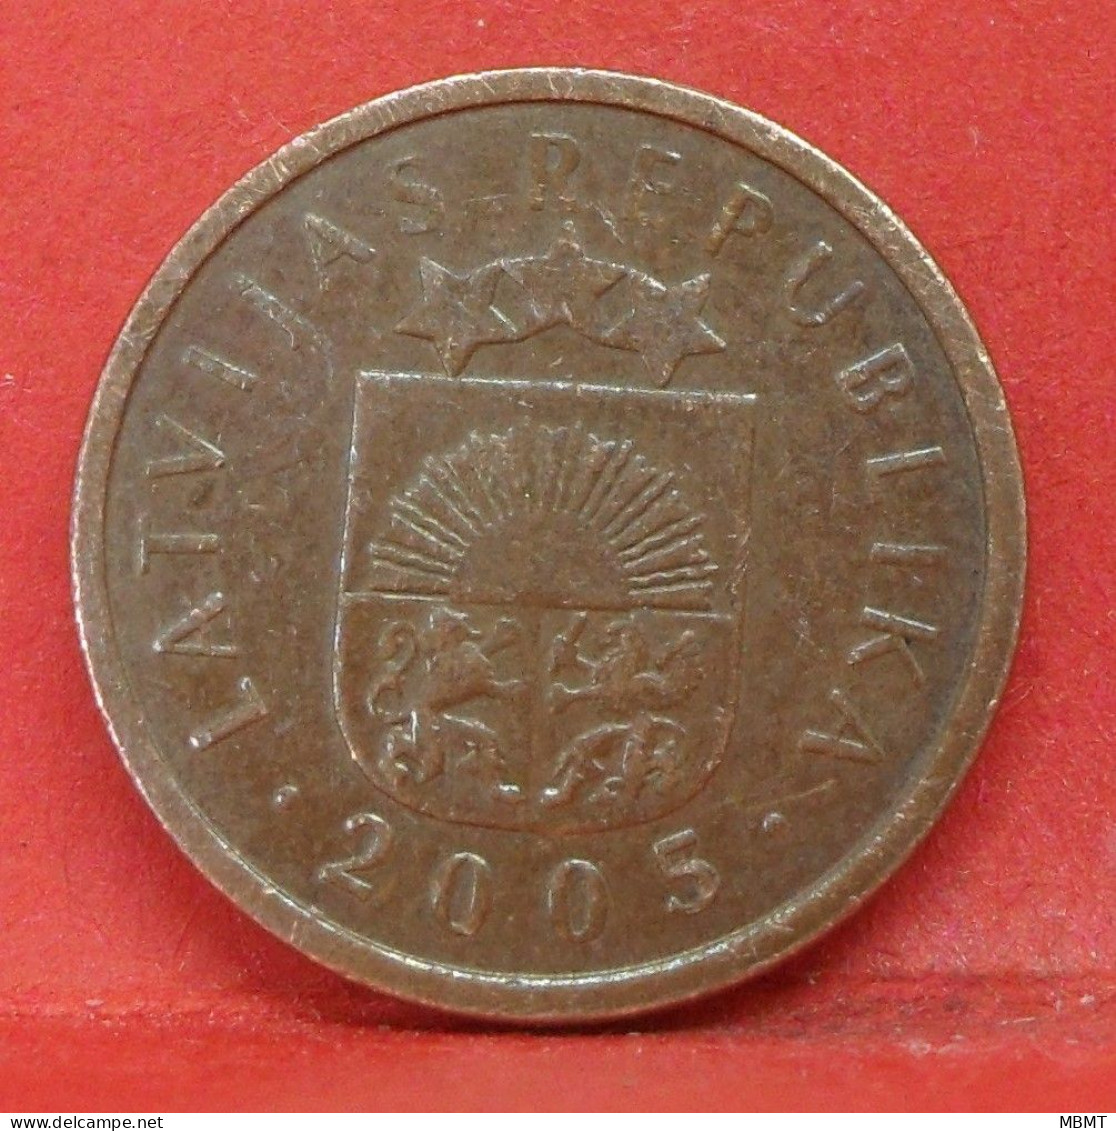 1 Santims 2005 - TTB - Pièce De Monnaie Lettonie - Article N°3632 - Lettonie